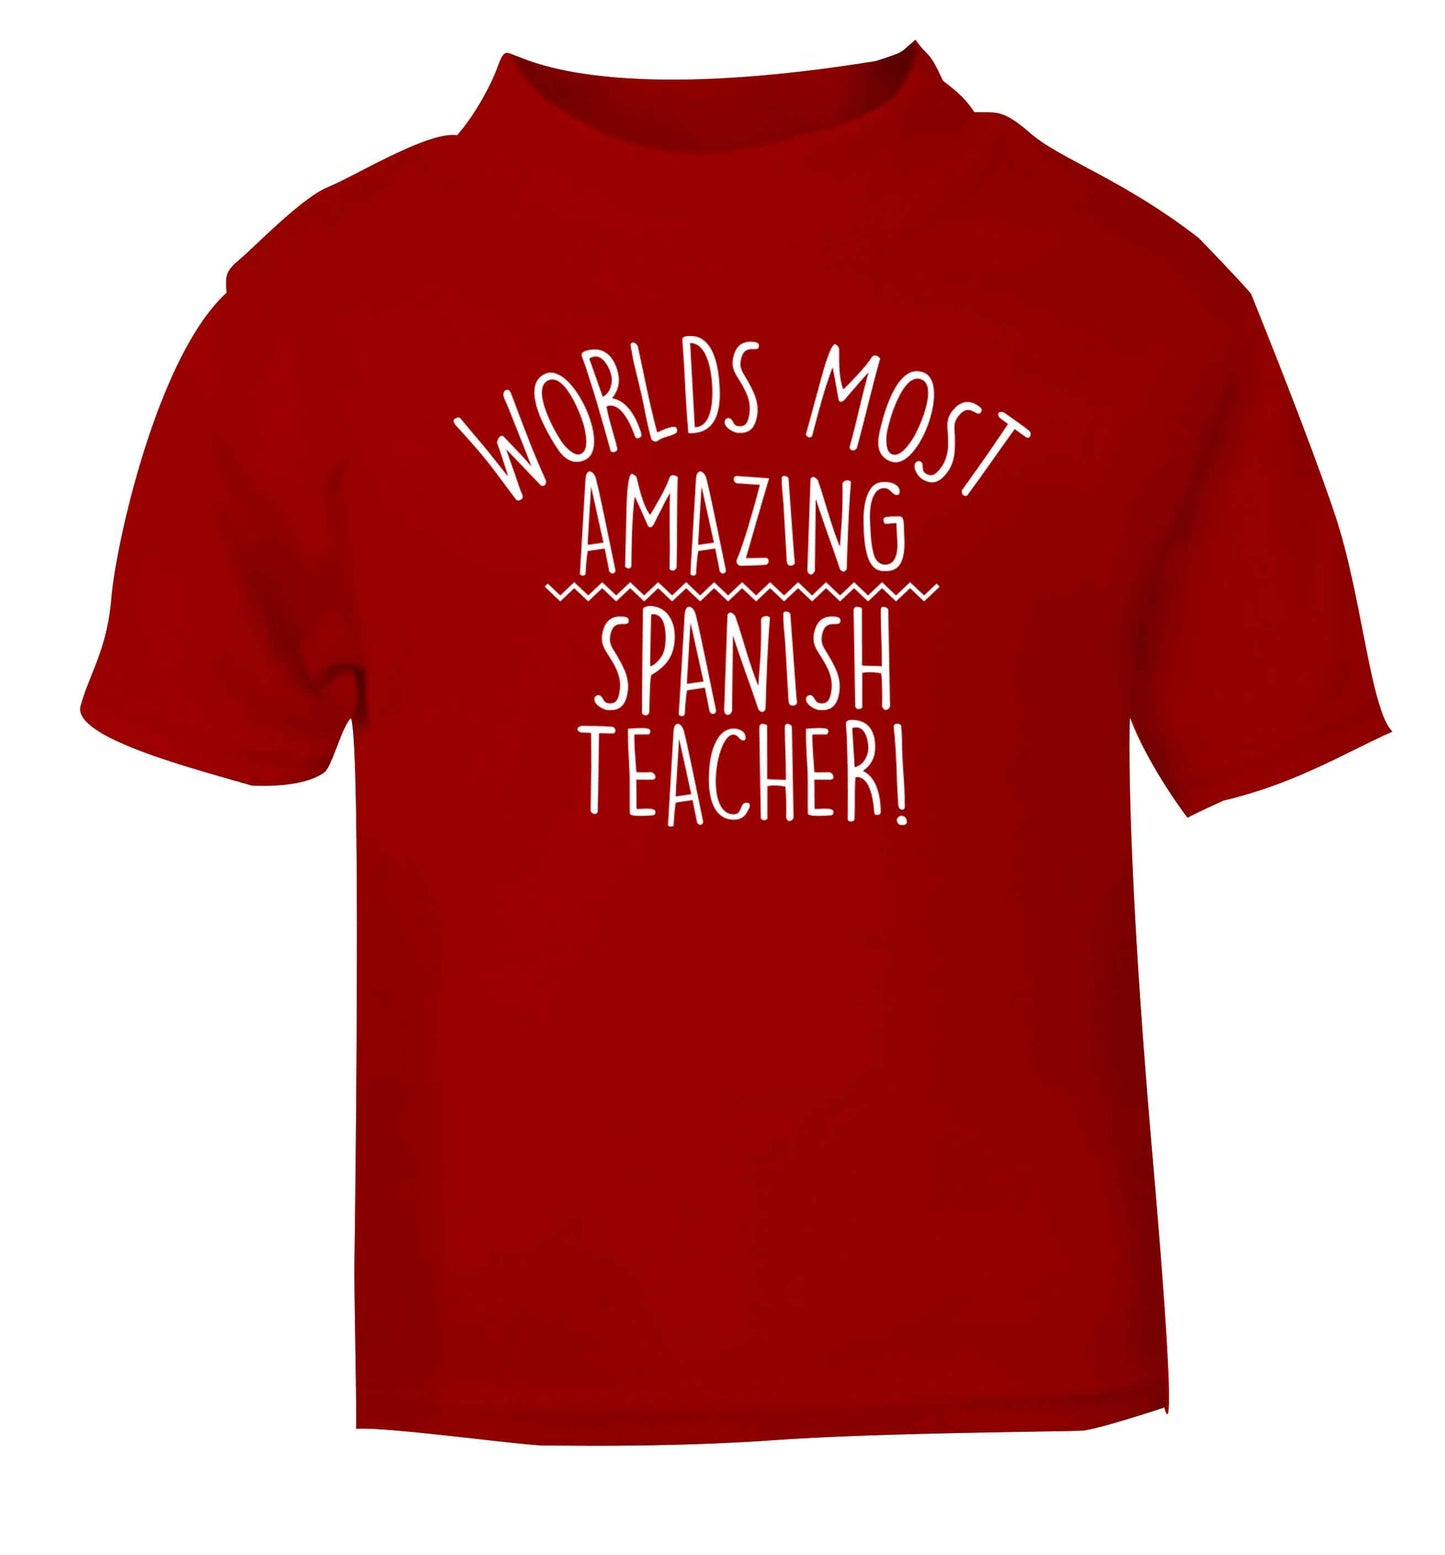 Worlds most amazing Spanish teacher red baby toddler Tshirt 2 Years